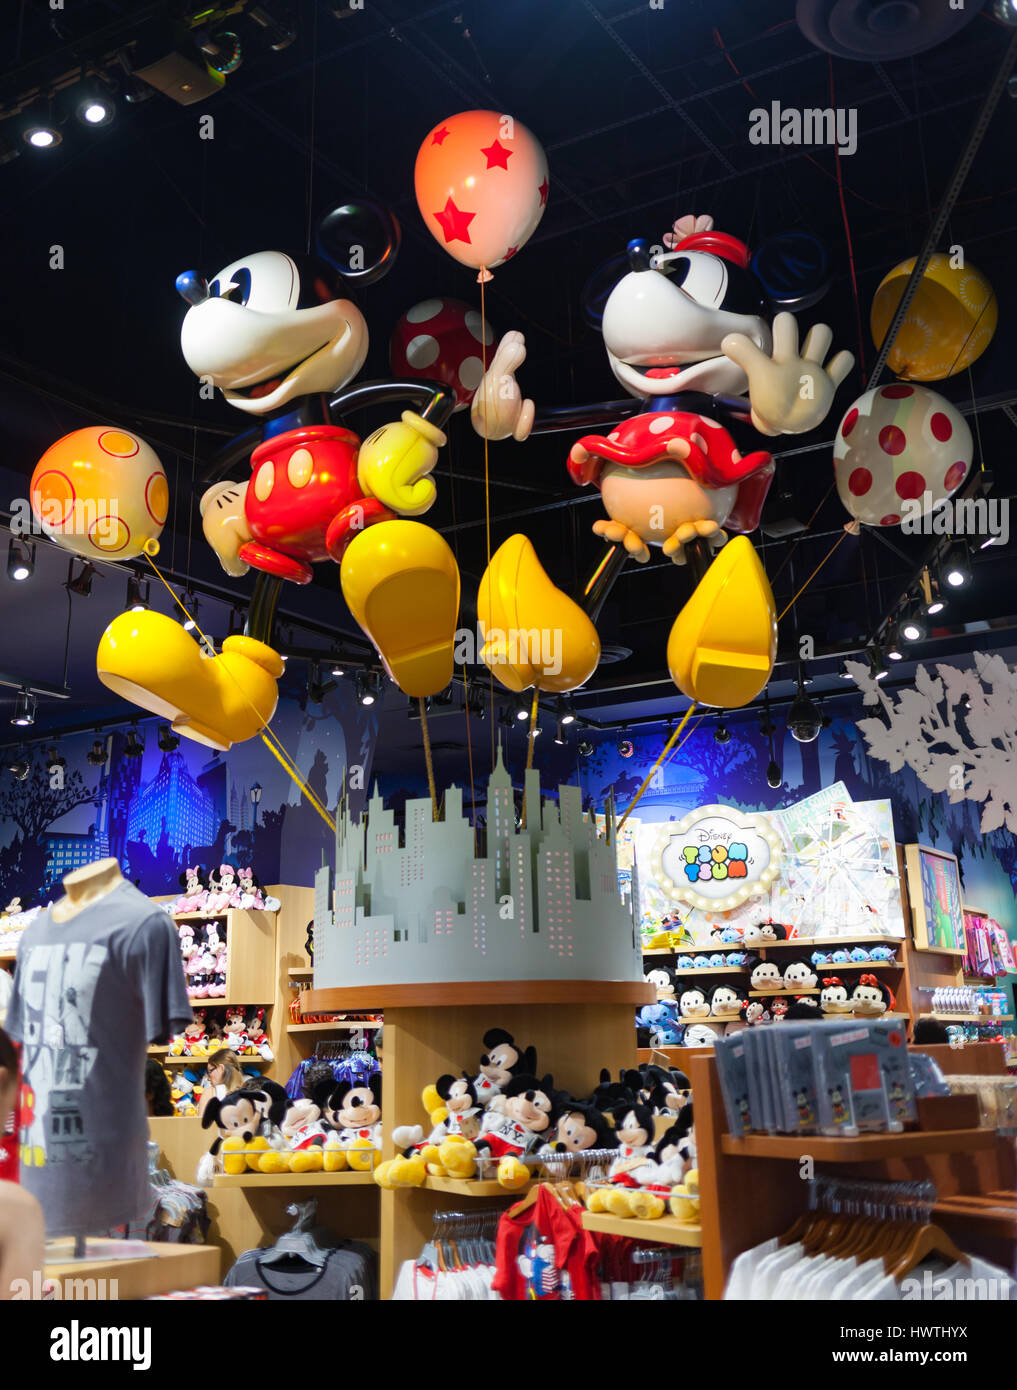 La città di New York, Stati Uniti d'America - Luglio 09, 2015: all'interno di Times Square Disney Store. Disney Store è una catena internazionale di negozi specializzati che vendono solo Disne Foto Stock